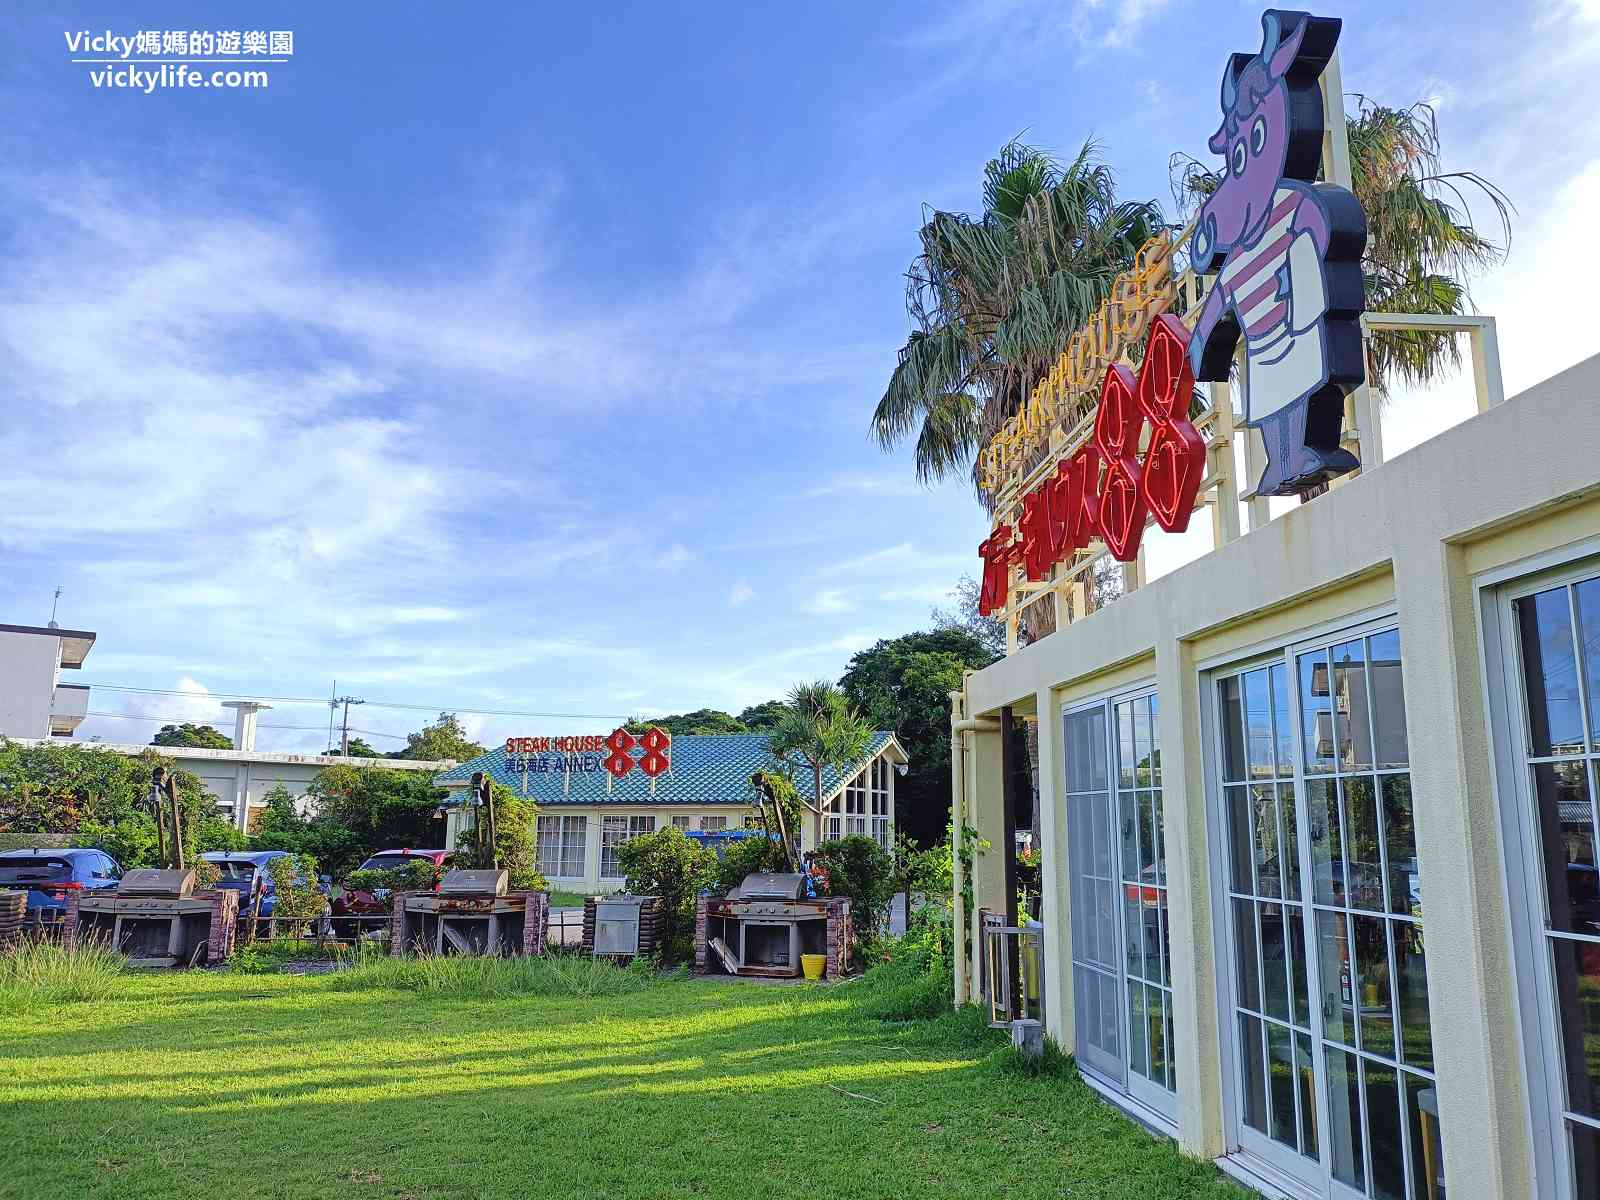 沖繩美食︱Steakhouse 88美麗海店：離美麗海水族館5分鐘60年歷史的美式風格牛排屋，沙朗牛、紐約牛好吃耶！沖繩在地人也喜歡